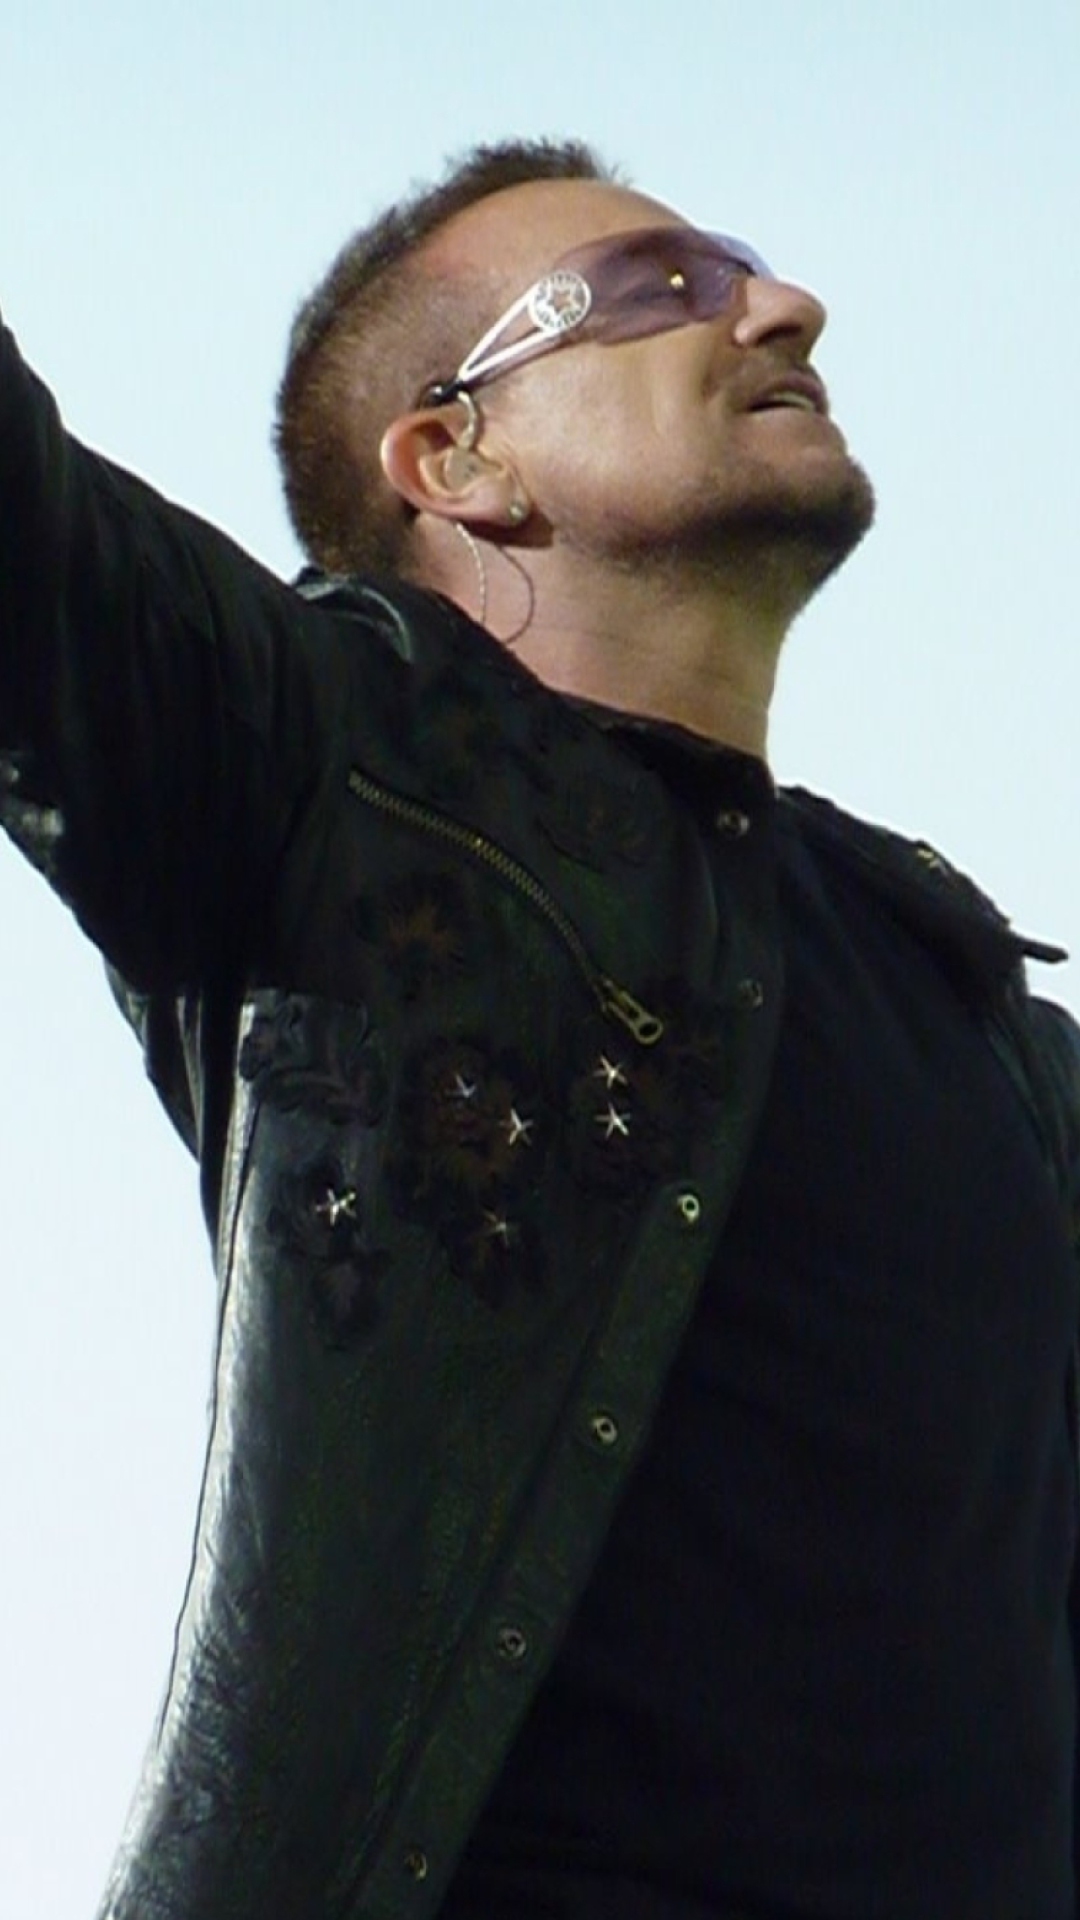 Fondo de pantalla Bono U2 1080x1920